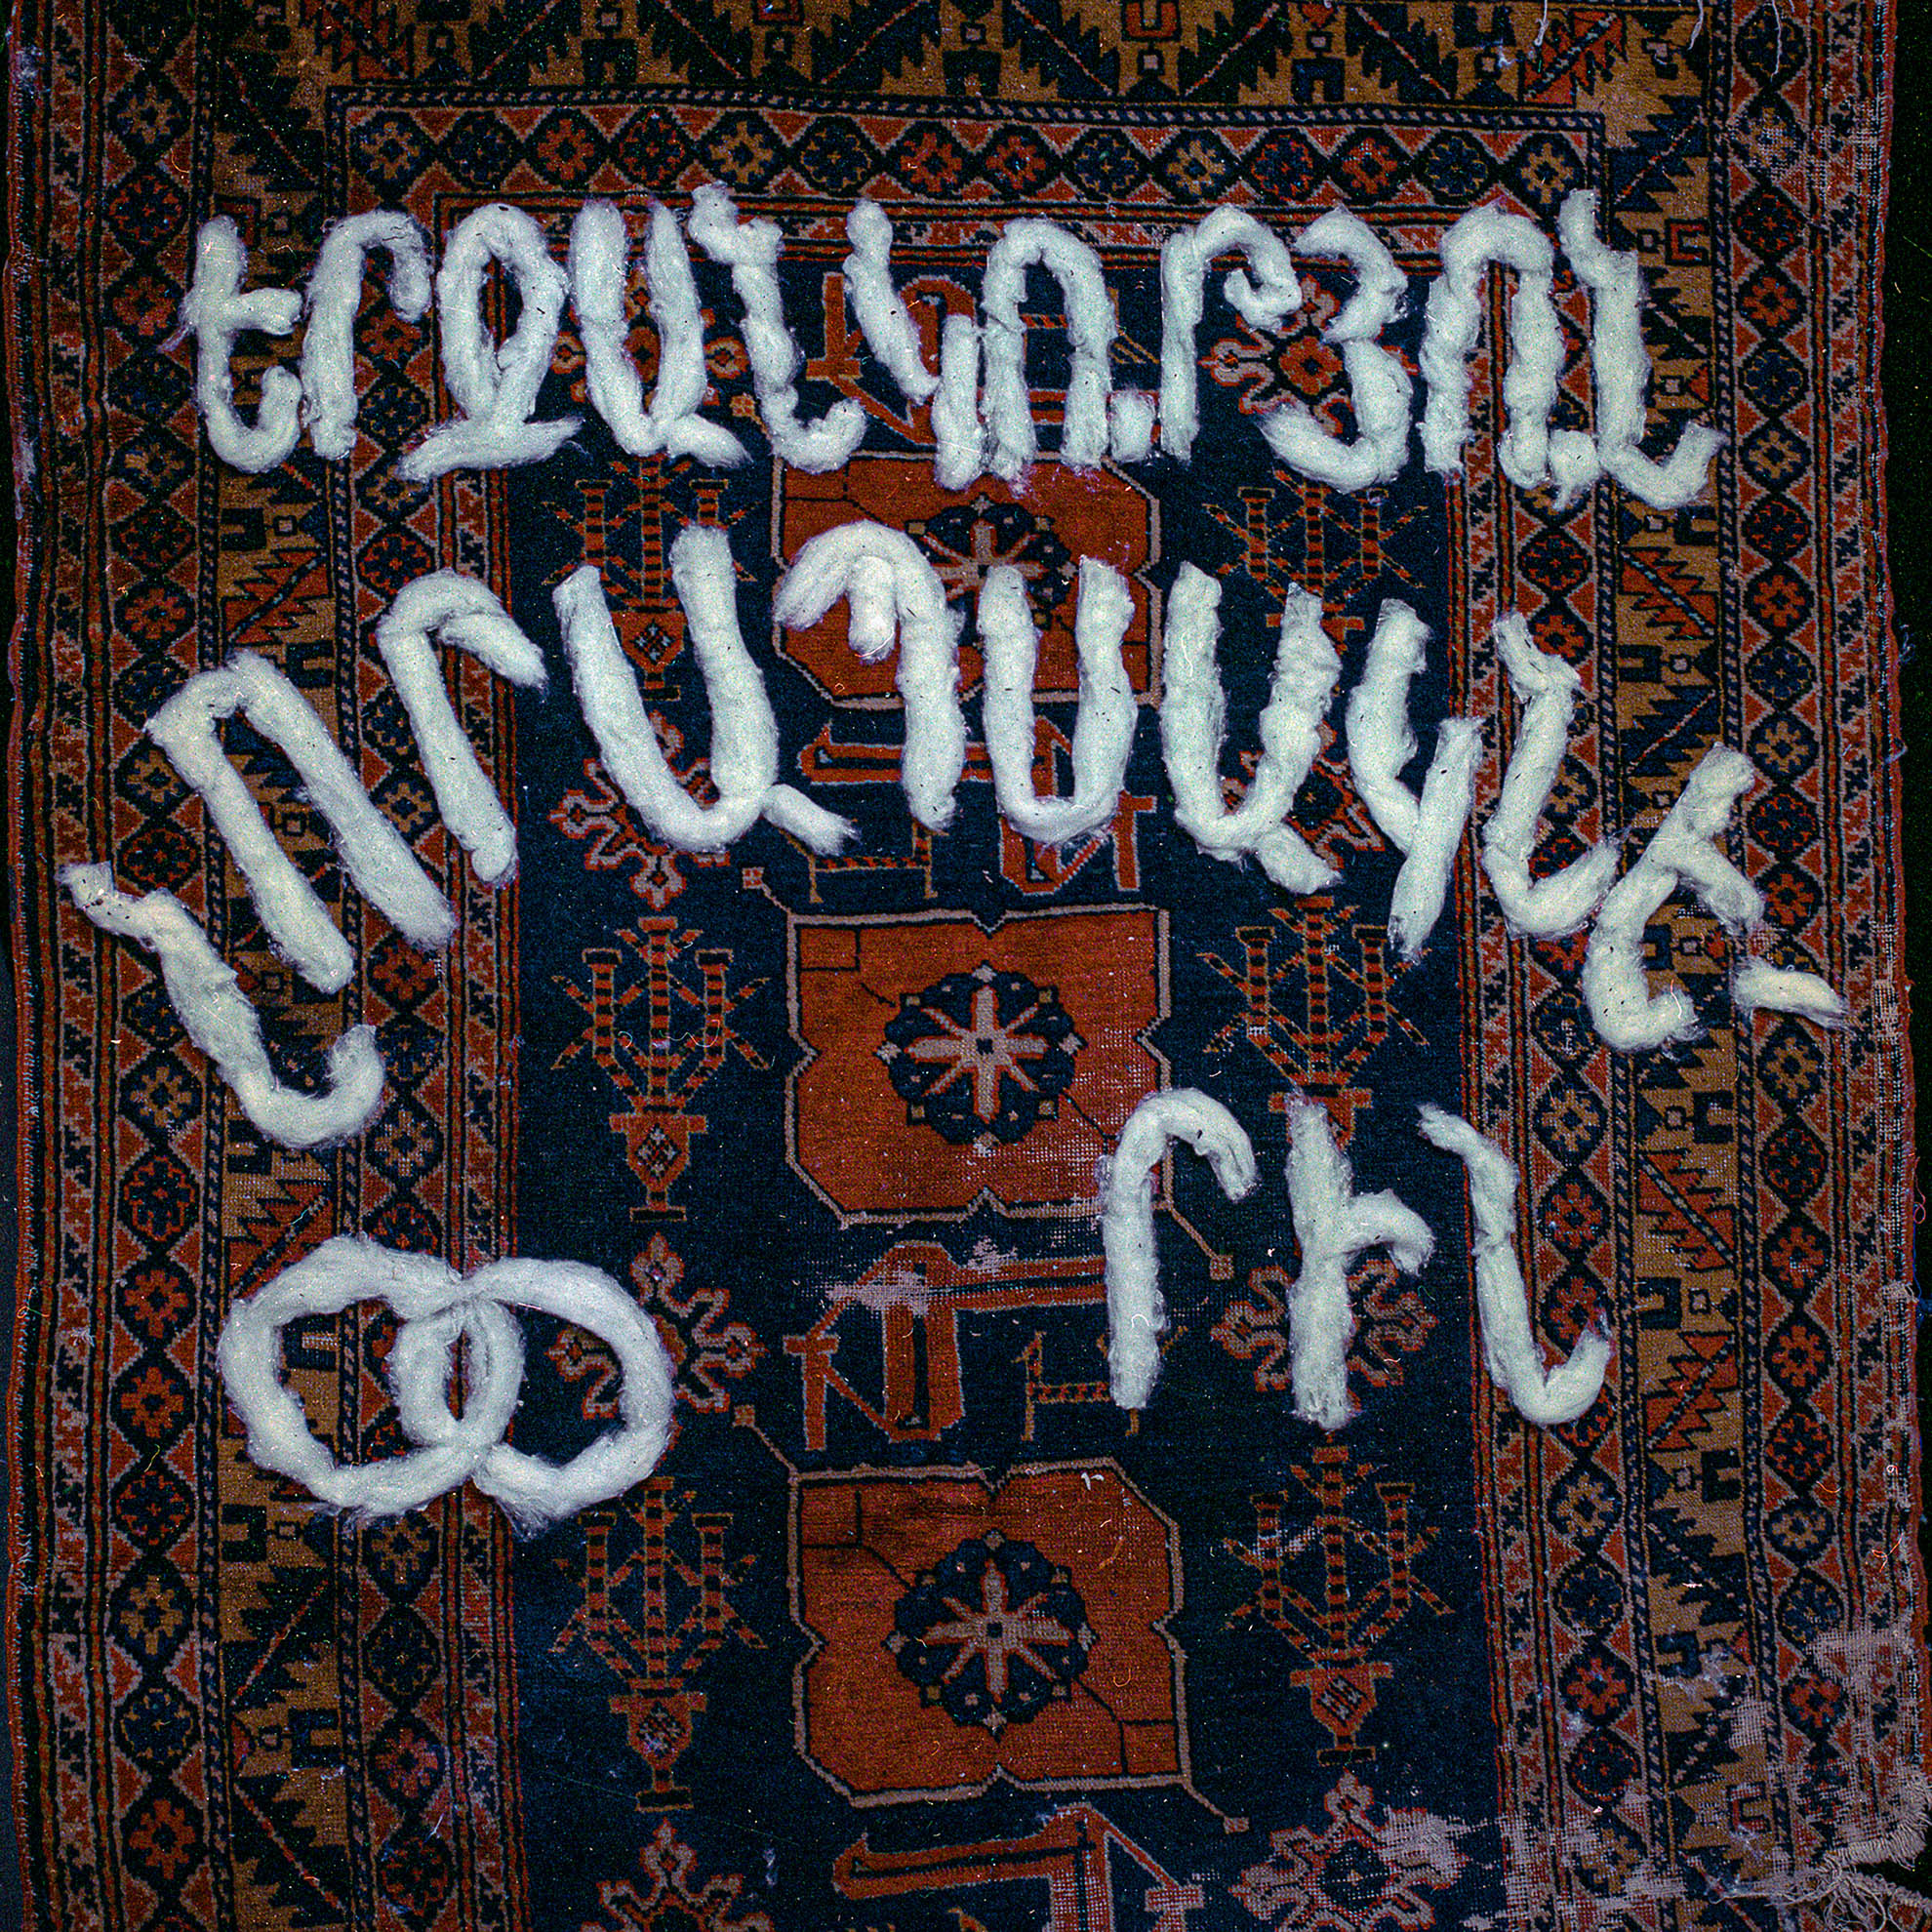 La alfombra es uno de los elementos simbólicos de la ceremonia nupcial, especialmente en la época soviética. "Felicidad para los recién casados" o una frase similar se escribía con algodón y se pegaba en la alfombra, que se colgaba en la pared detrás de los recién casados.